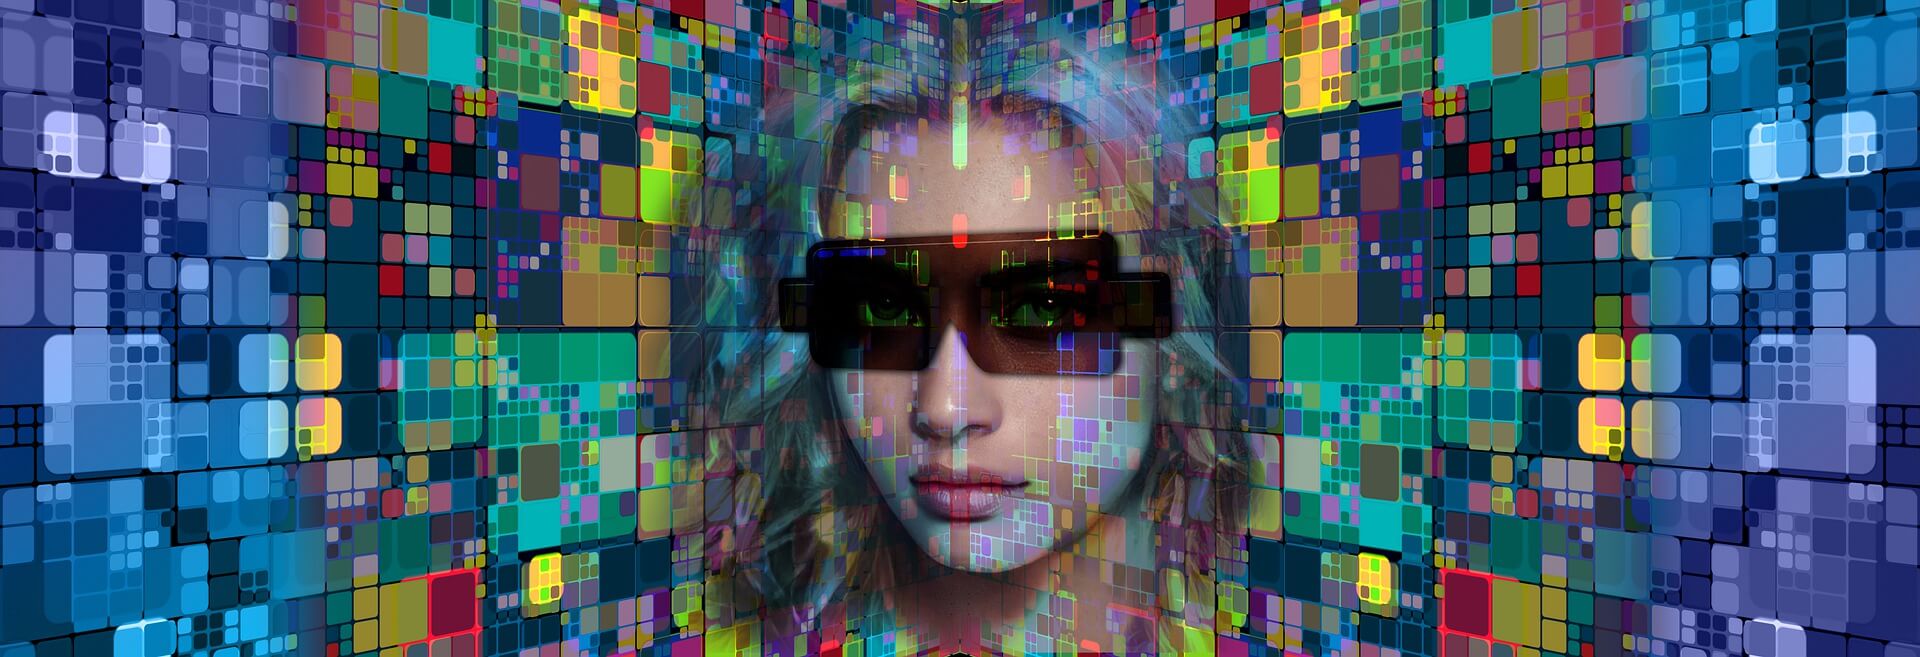 图片展示一位戴墨镜的女性面孔，与背后色彩斑斓的数字化像素方块融合，给人一种现代科技感和未来主义艺术风格。